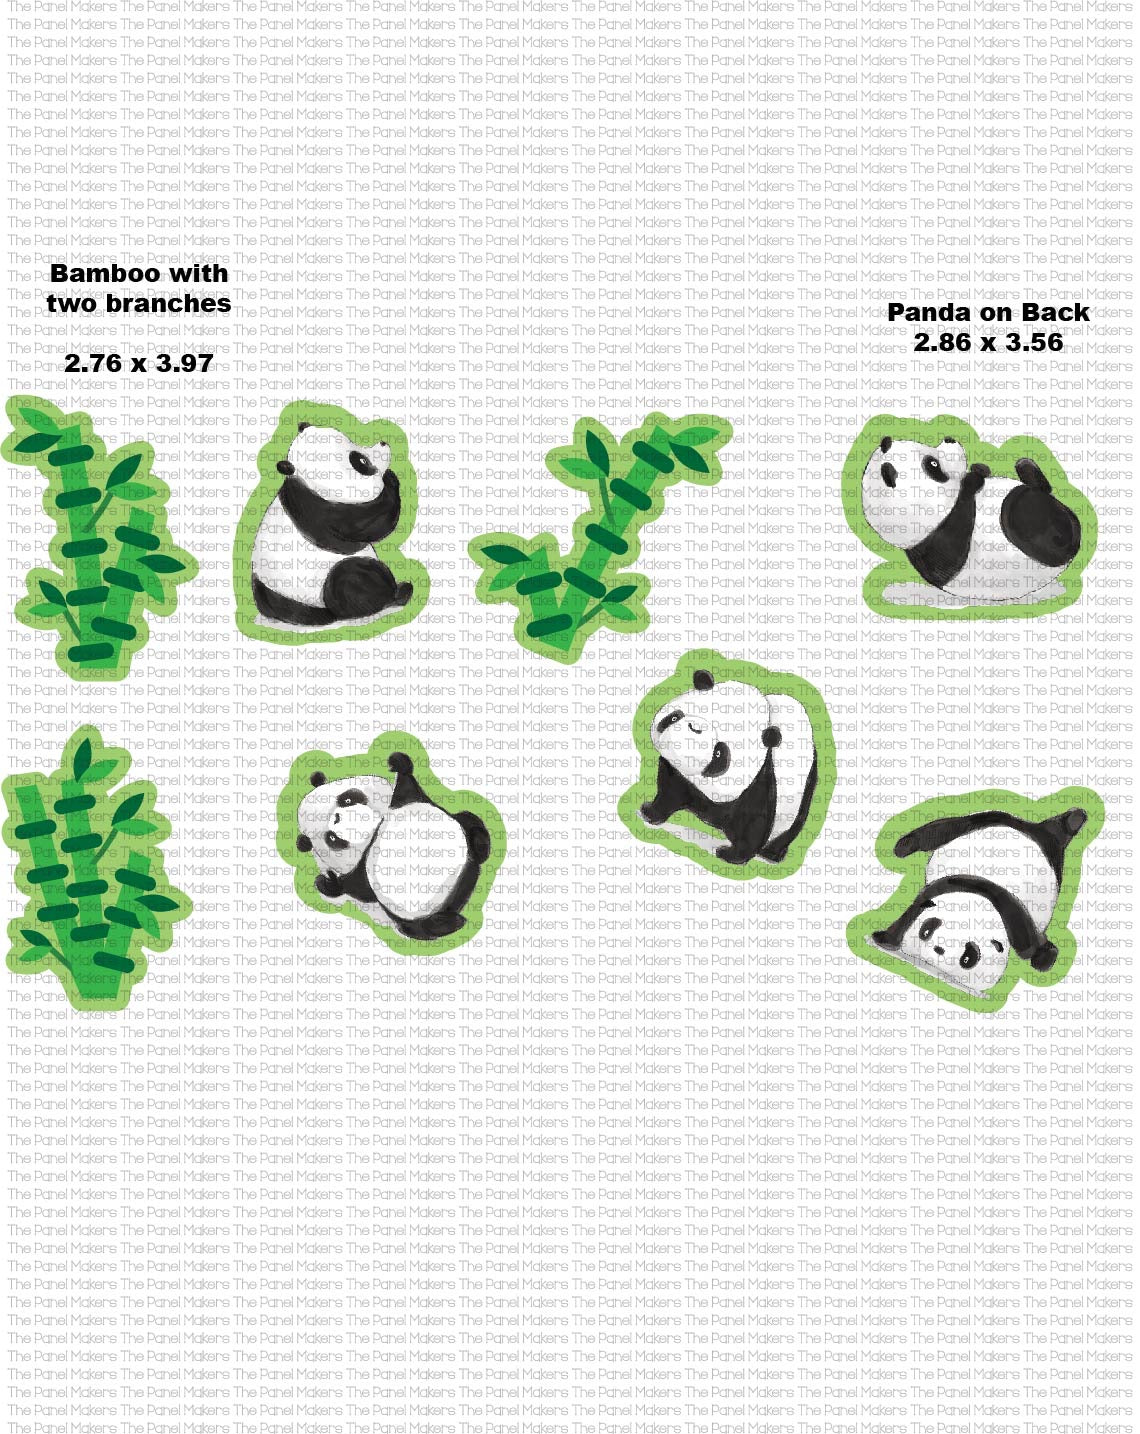 Tumbling Pandas panel